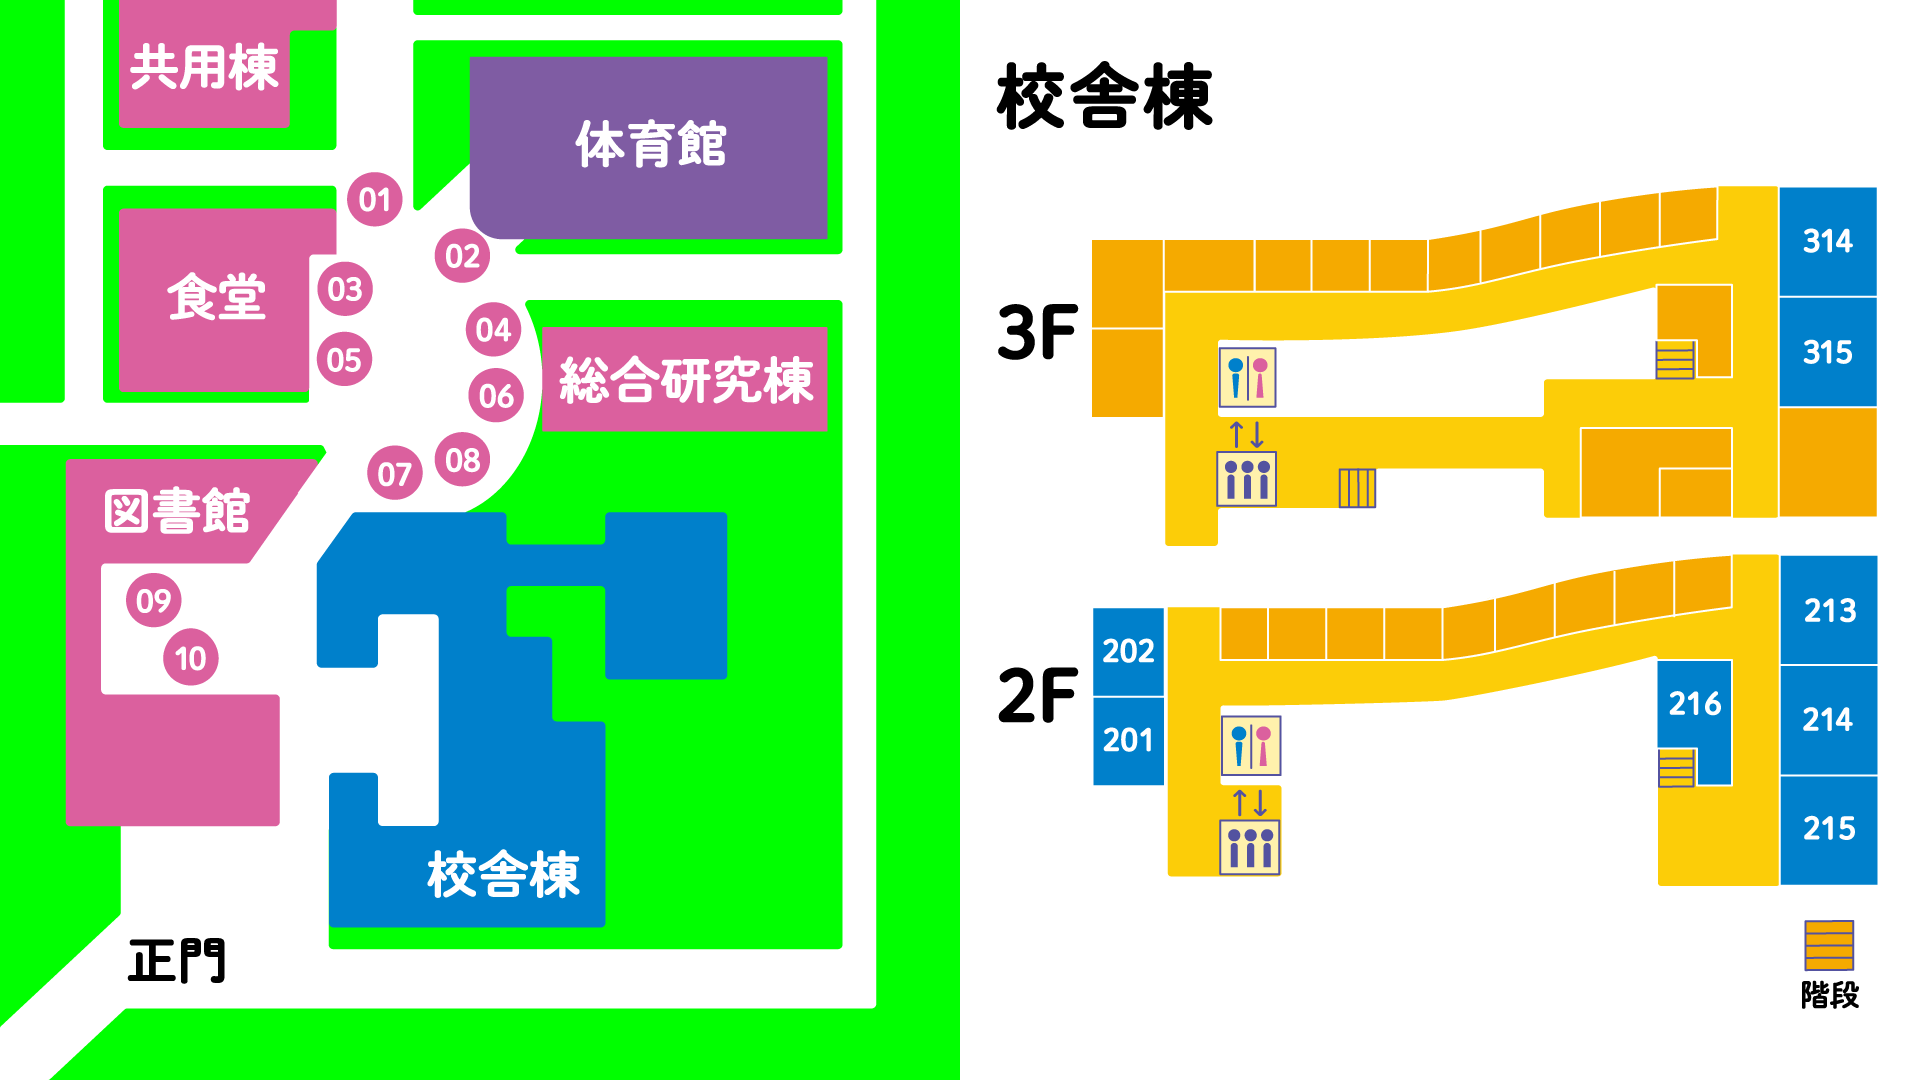 筑波技術大学学内マップです。画像左側は学内全体の地図、右側は校舎棟の地図です。